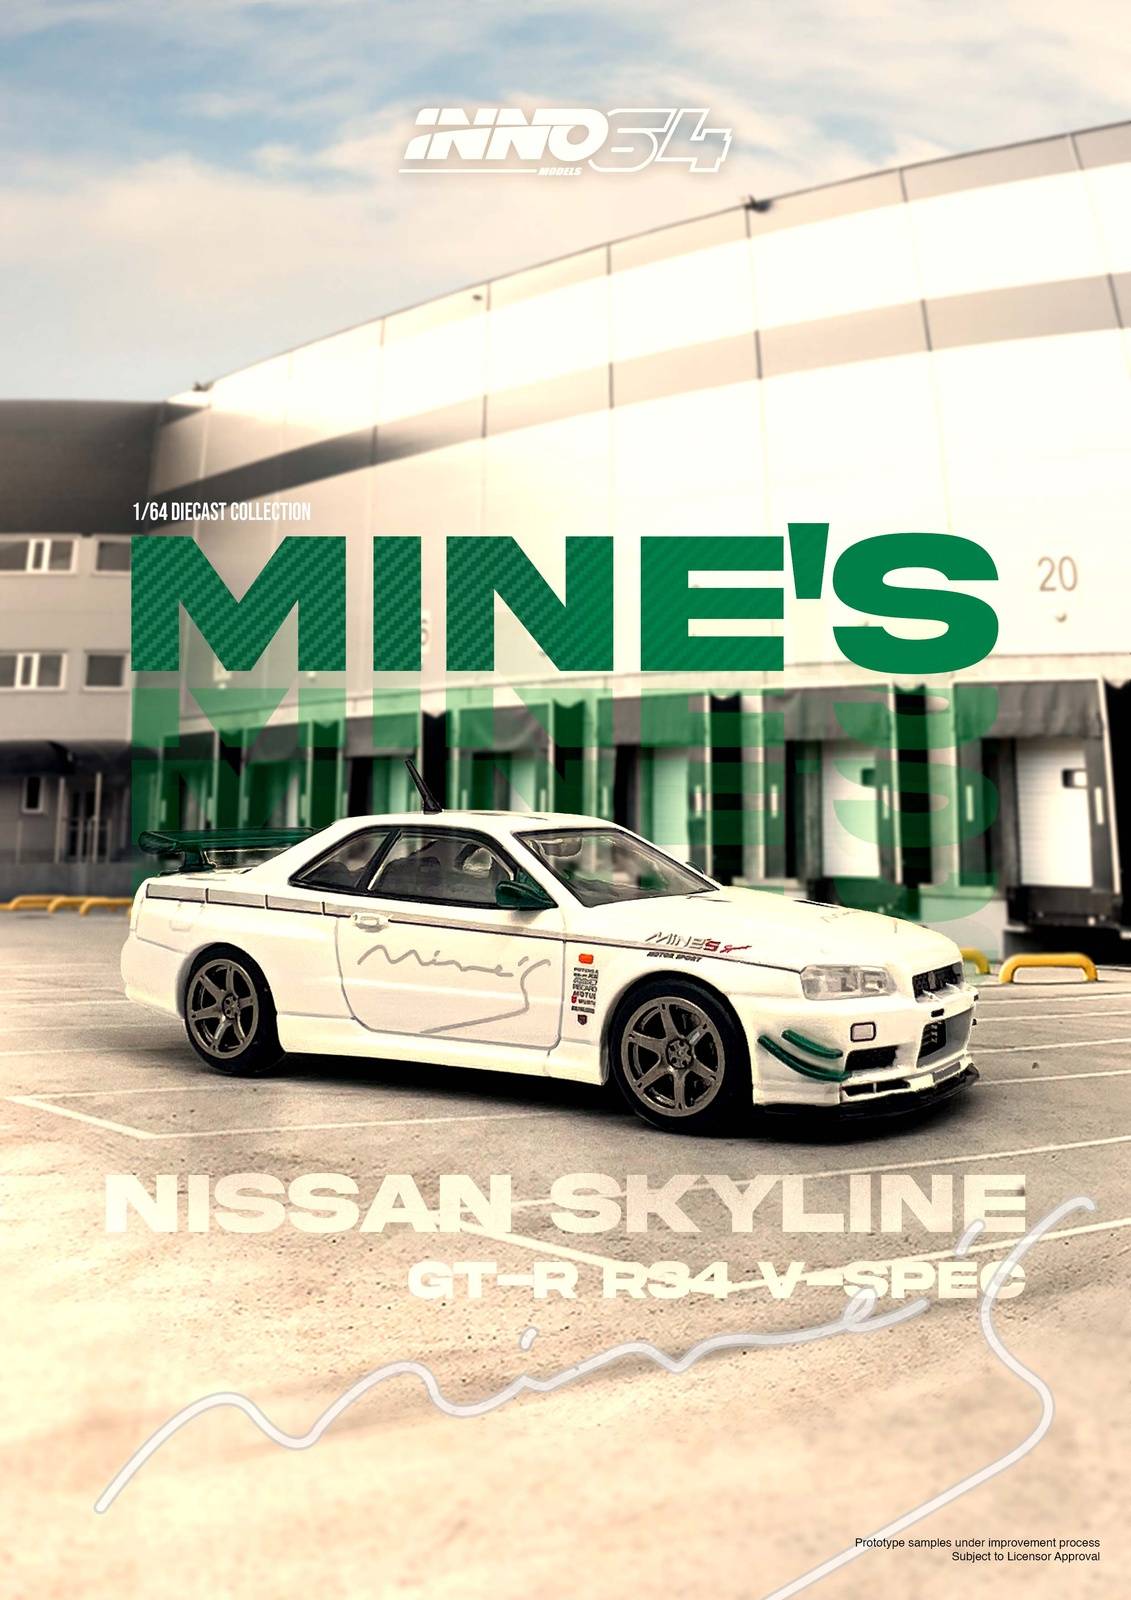 PRE-ORDER INNO64 1:64 Nissan Skyline GT-R R34 V-SPEC Tuned by "MINE'S"